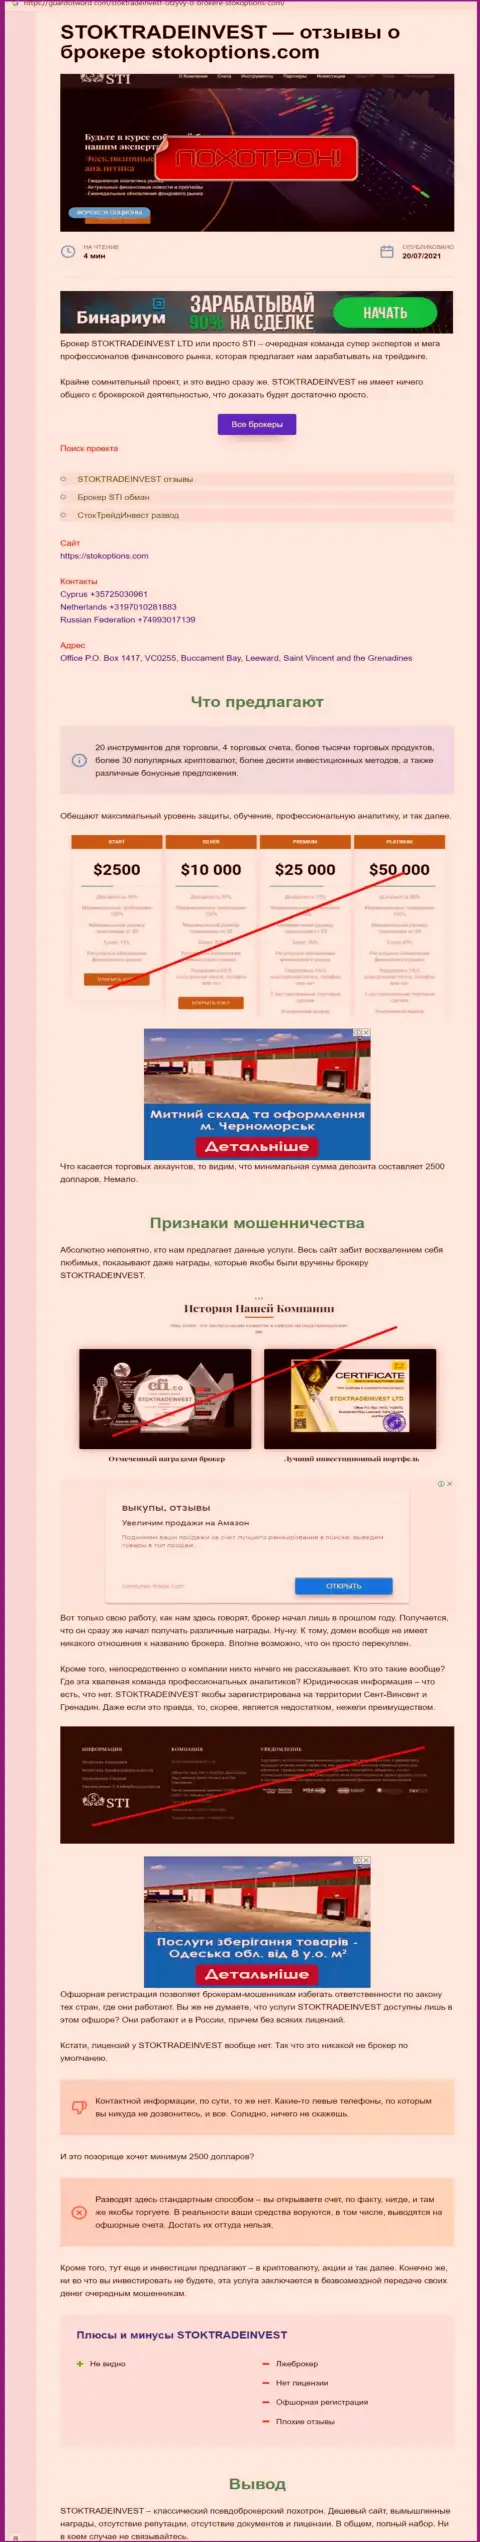 Обзор с разоблачением схем незаконных действий StokTradeInvest Com - это ОБМАНЩИКИ !!!